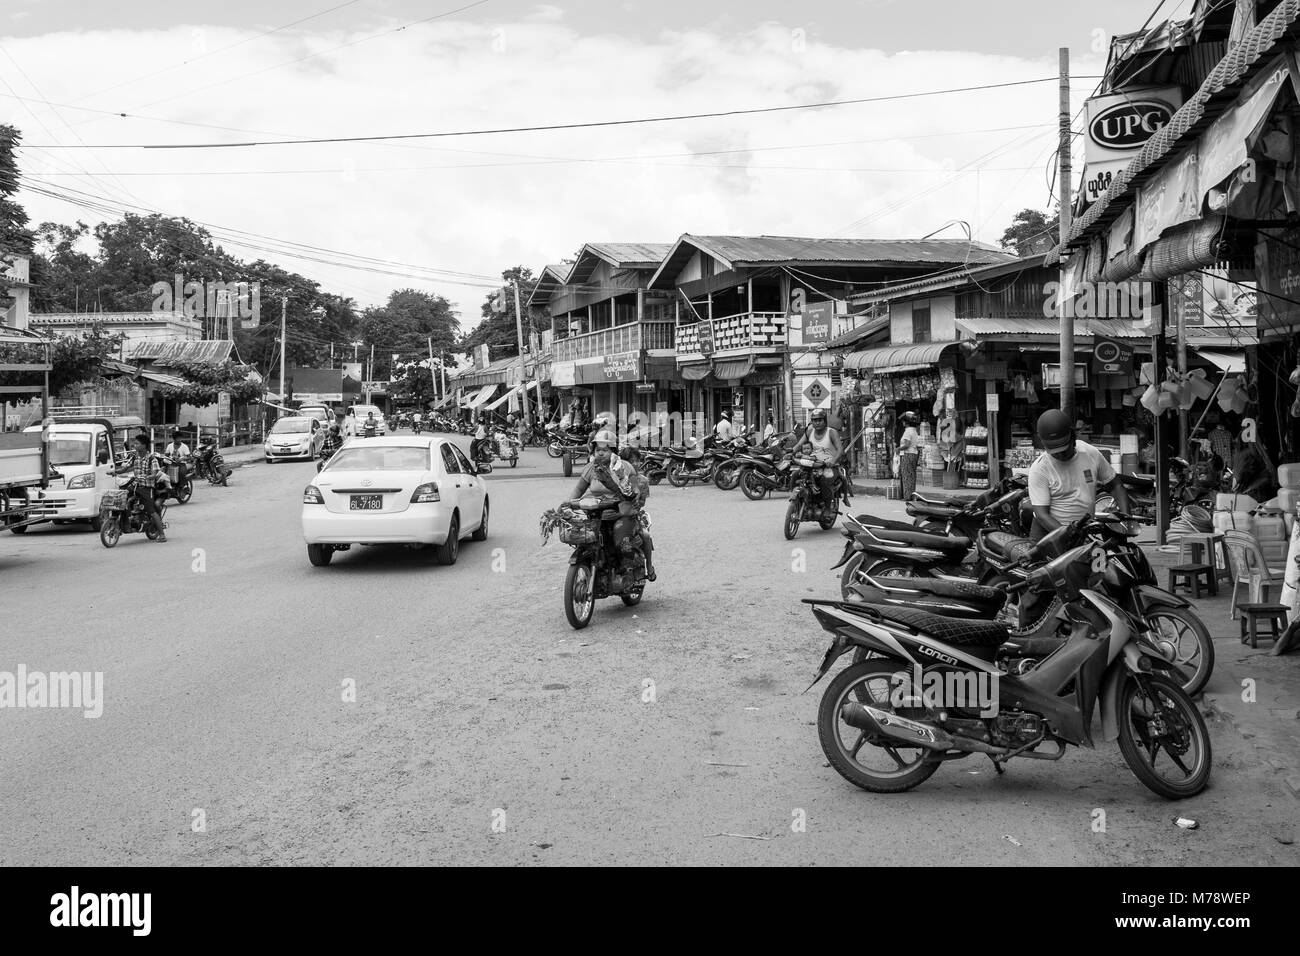 Una strada di sabbia accanto a Nyaung U mercato vicino a Bagan, MYANMAR Birmania. le bancarelle del mercato e parcheggiata motocicli, modalità di trasporto comune nel Sud Est asiatico Foto Stock